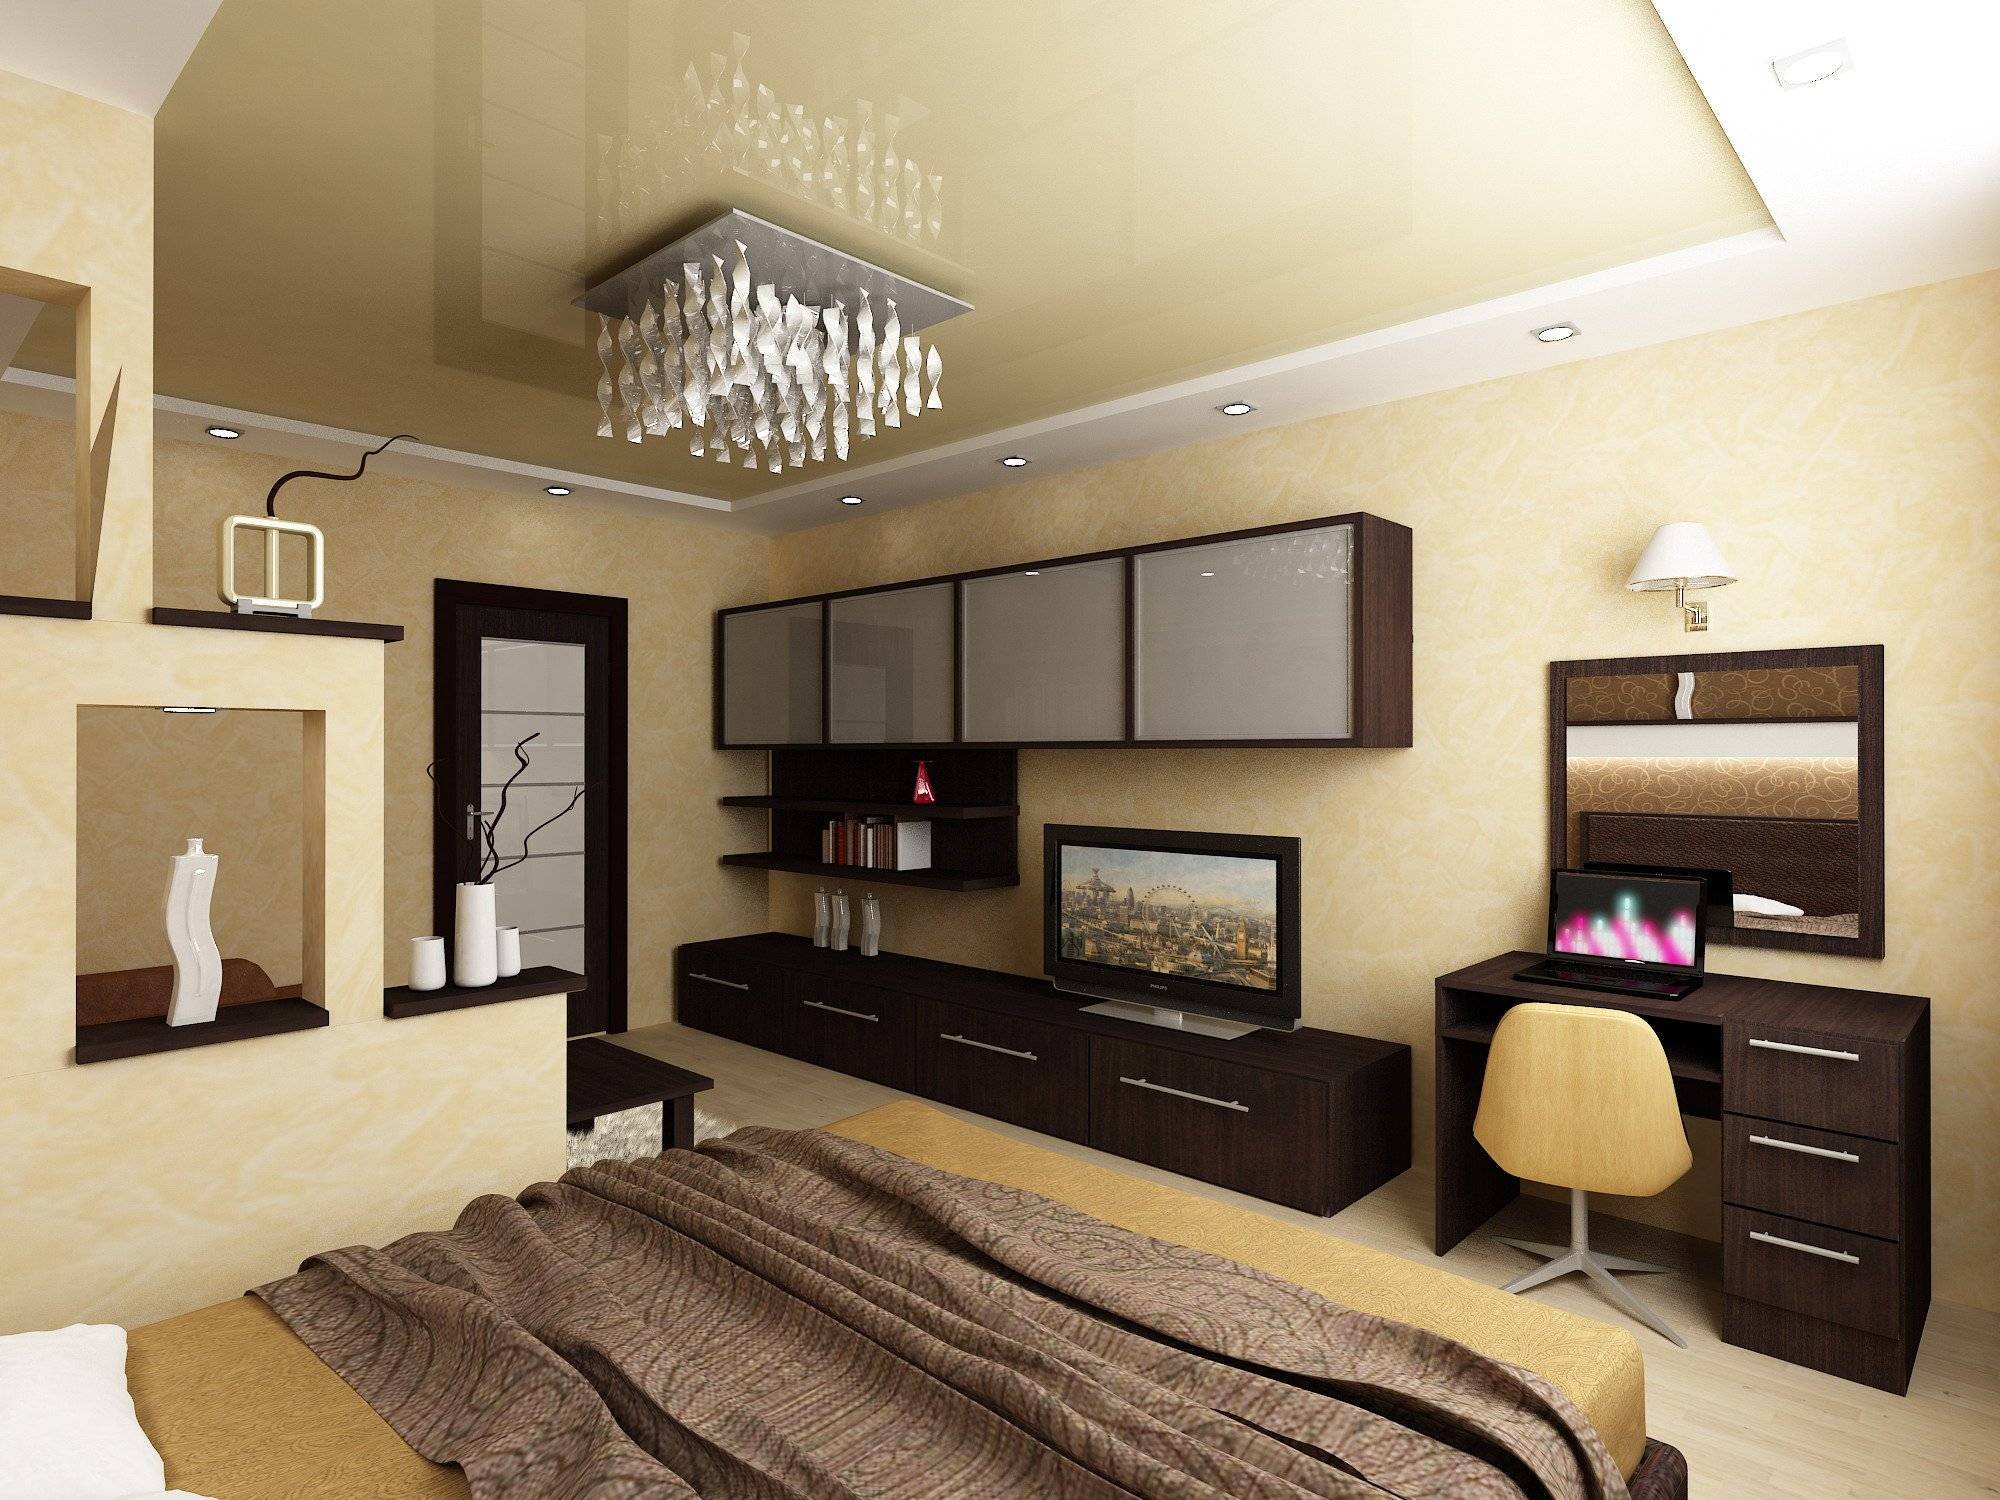 Спальня-гостиная 17 кв. м: зонирование комнаты, дизайн, фото интерьера, планировка